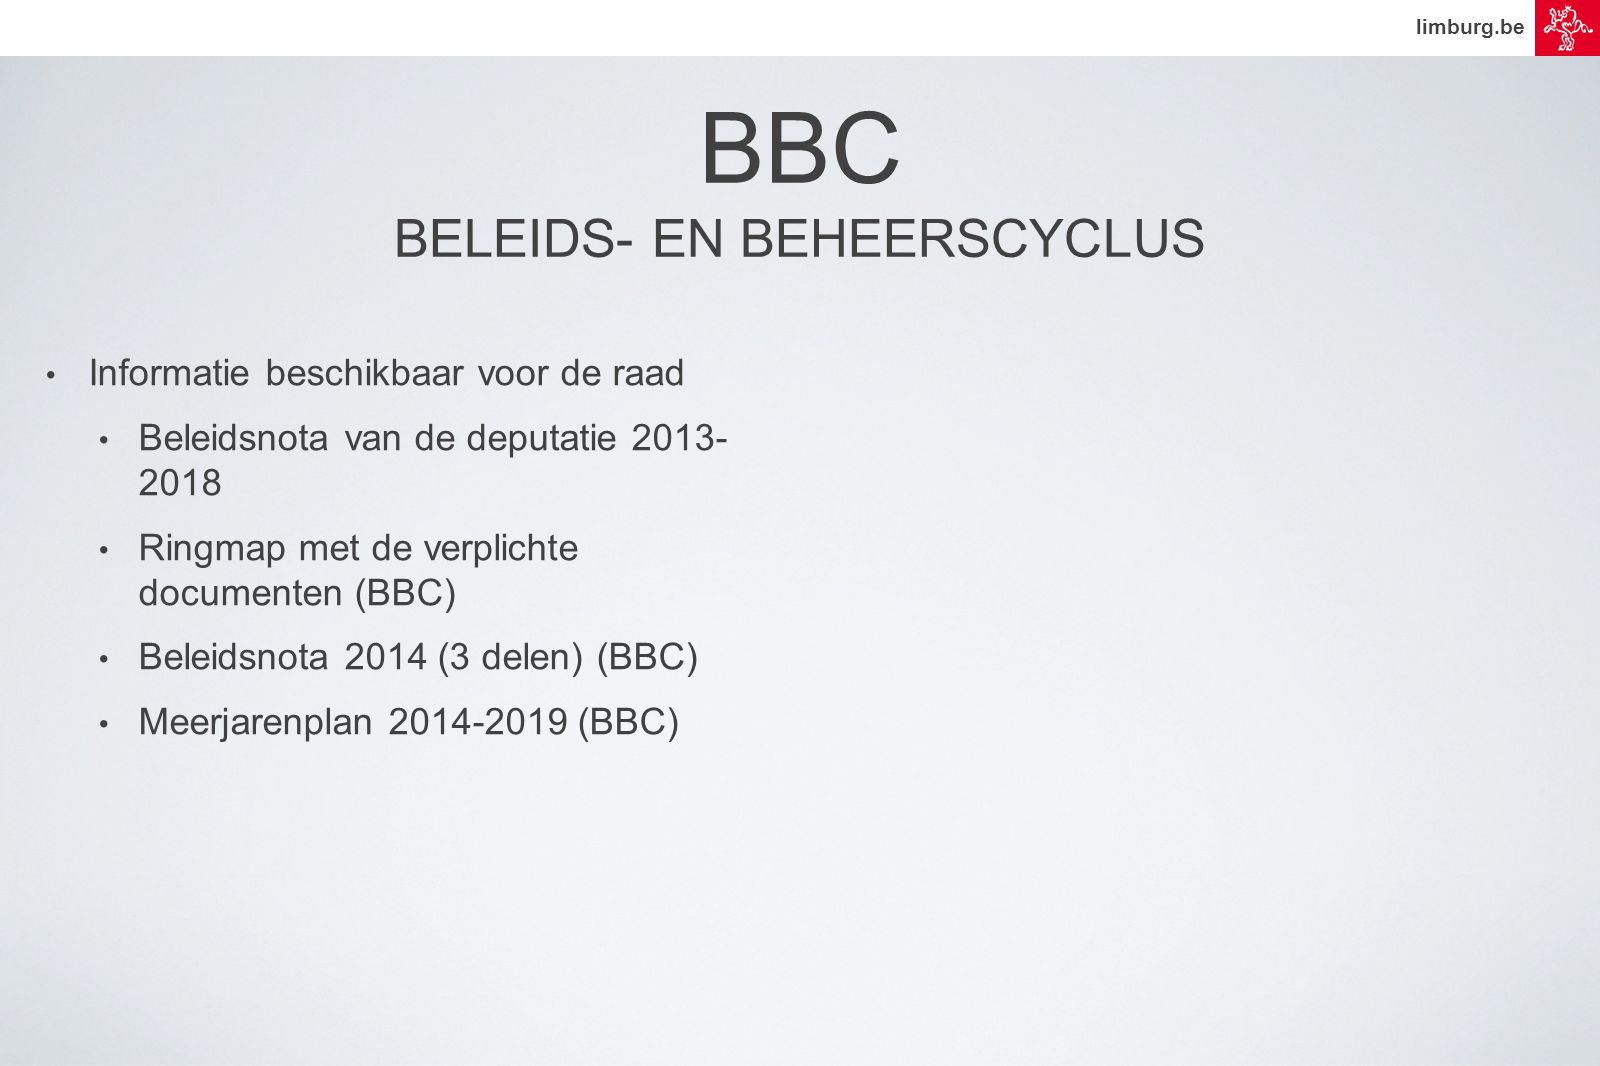 limburg.be • Informatie beschikbaar voor de raad • Beleidsnota van de deputatie • Ringmap met de verplichte documenten (BBC) • Beleidsnota 2014 (3 delen) (BBC) • Meerjarenplan (BBC) BBC BELEIDS- EN BEHEERSCYCLUS